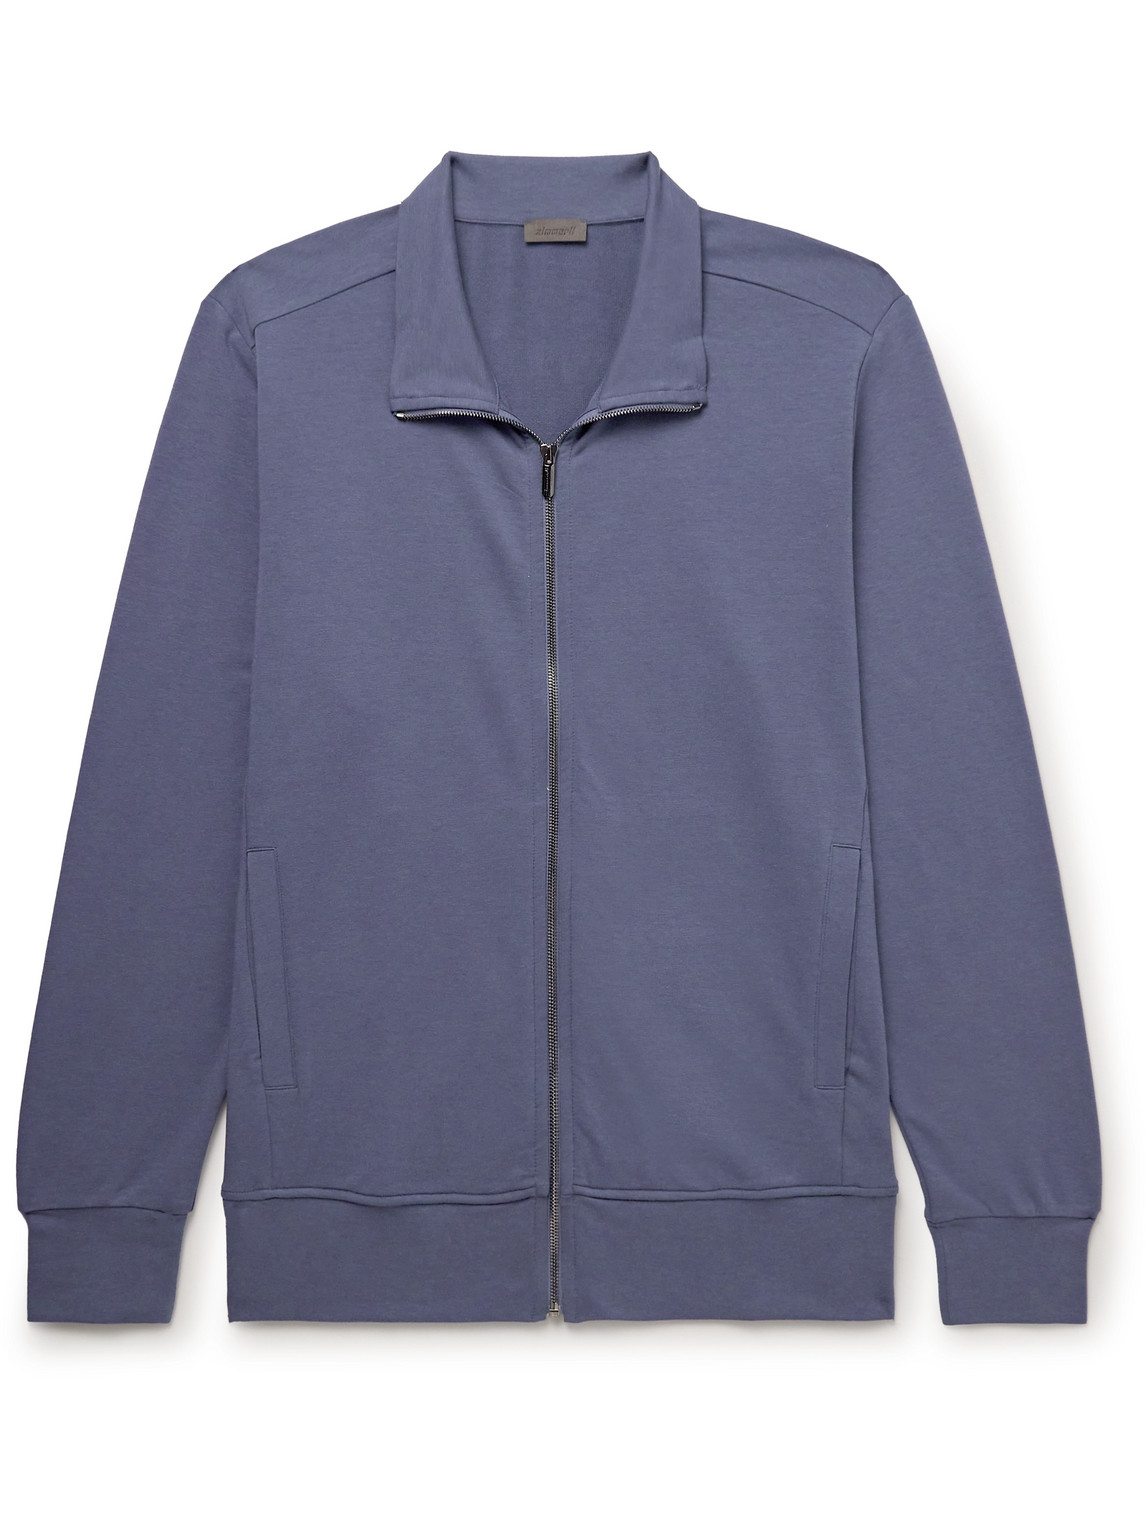 Zimmerli - Stretch Modal and Cotton-Blend Jersey Track Jacket - Men - Blue - S von Zimmerli